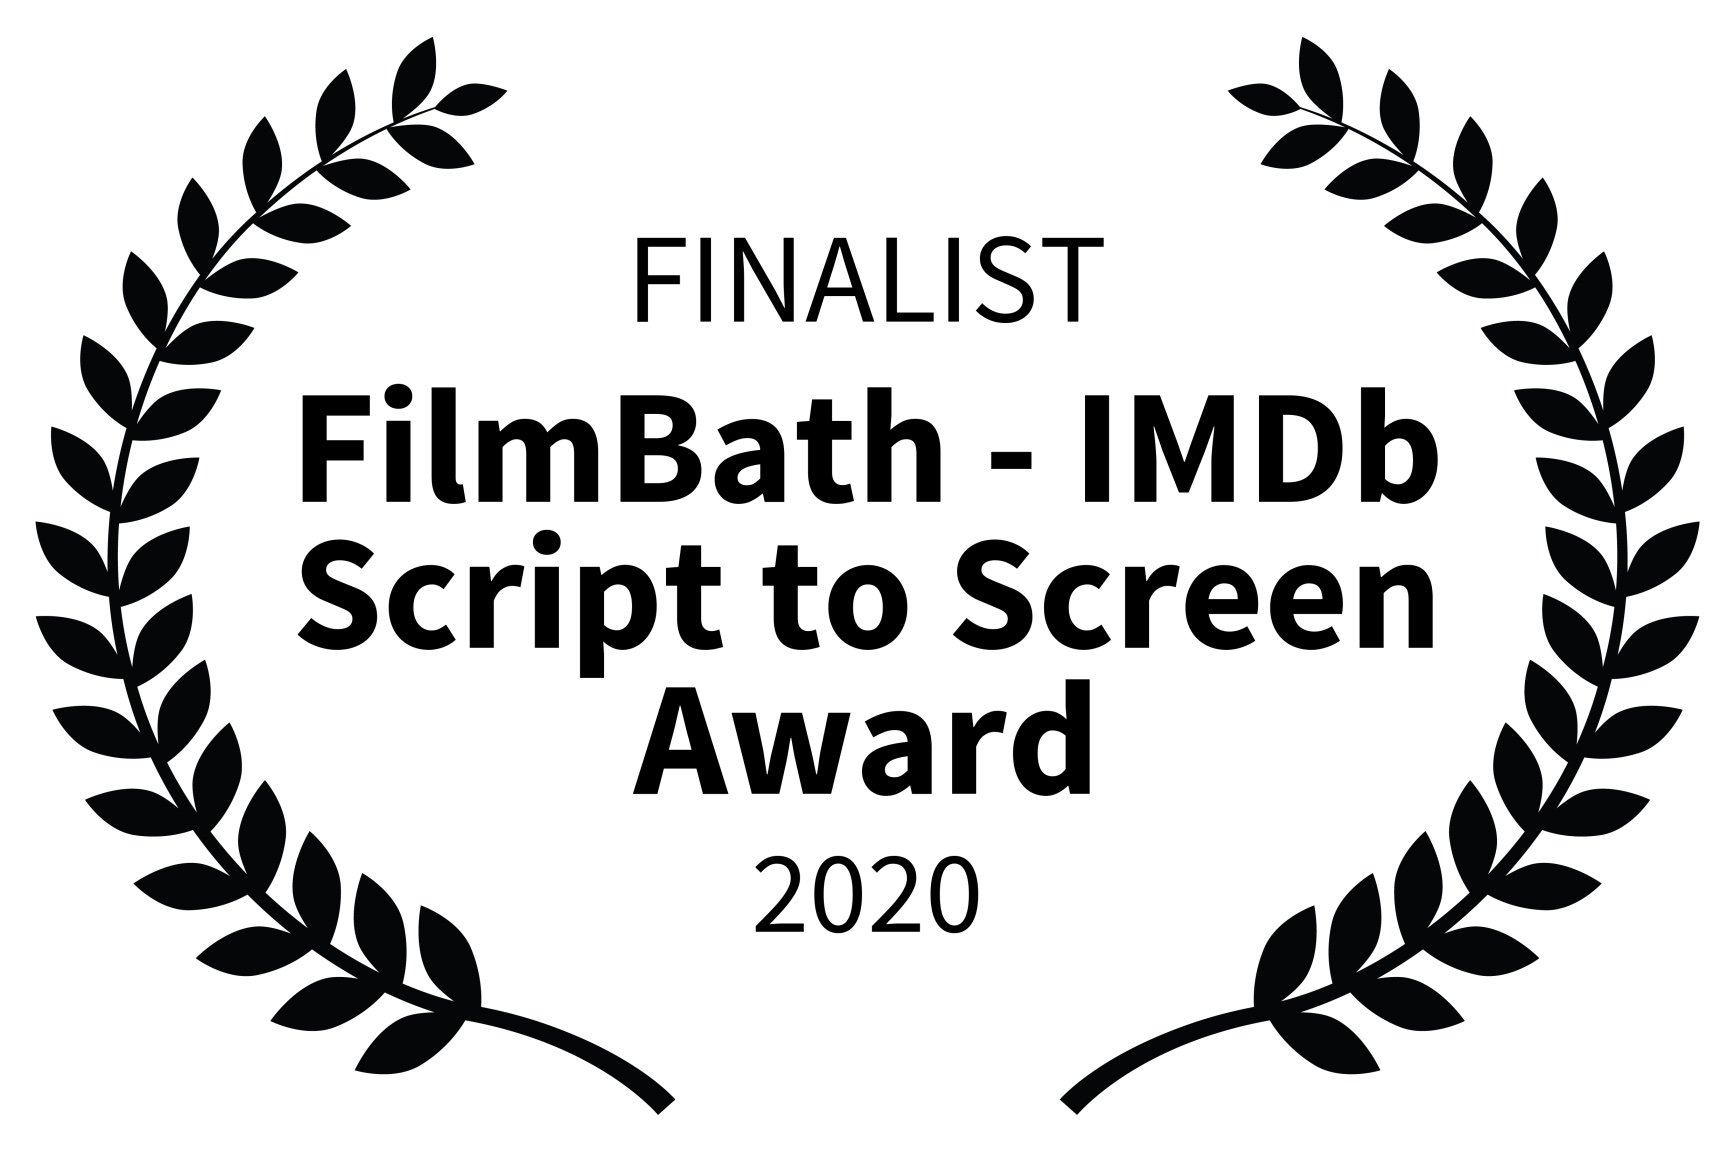 FINALIST - FilmBath - IMDb Script to Screen Award - 2020.jpg